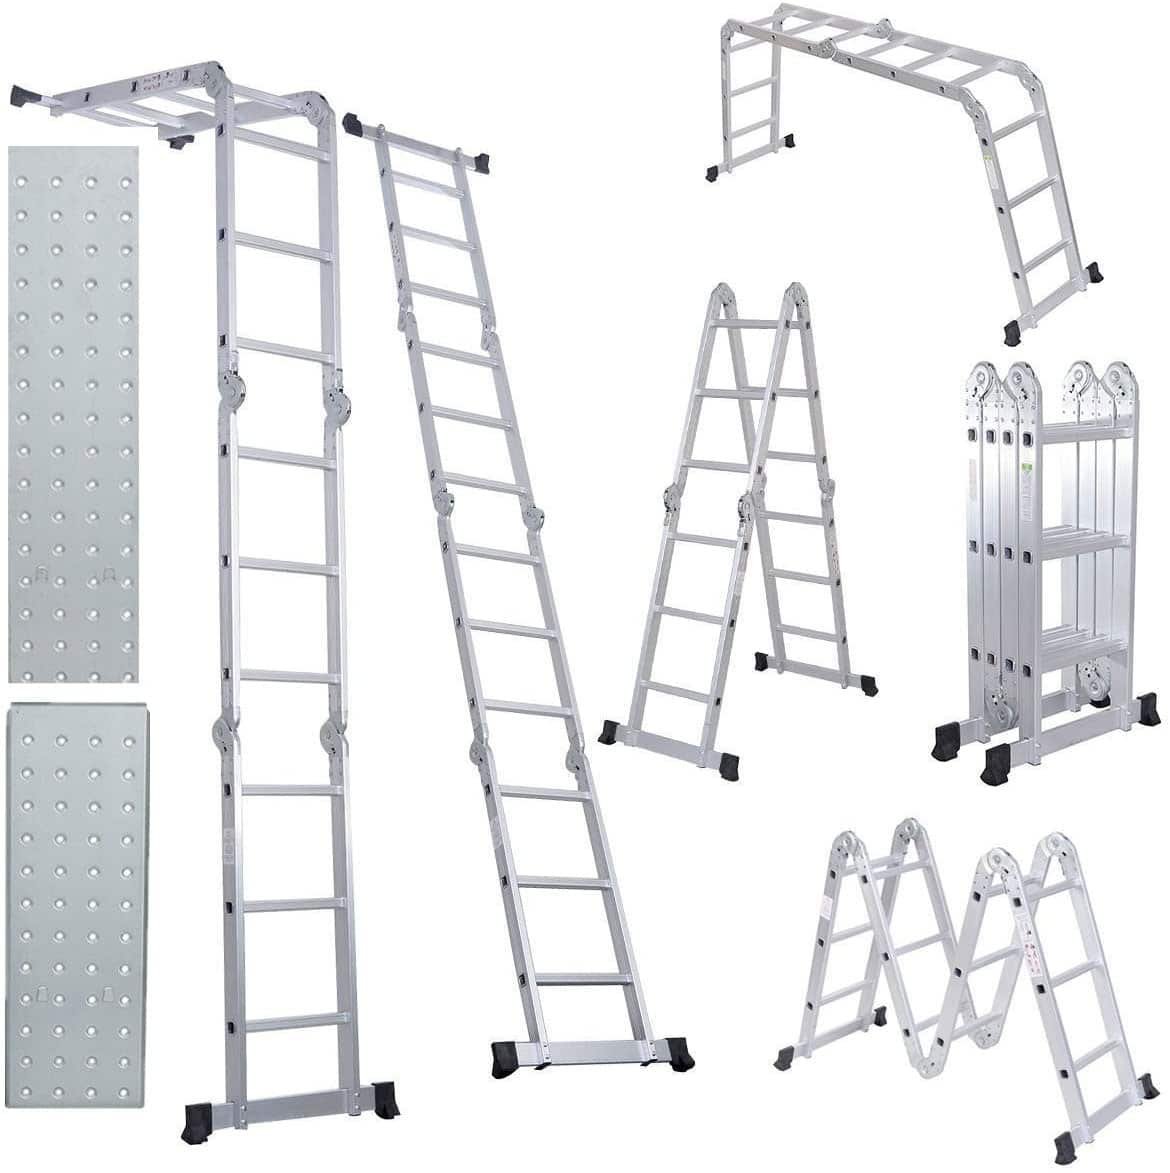 Comie 330lb 12.5ft Multi Purpose Aluminum Foldable Lightweight Scaffold Ladder